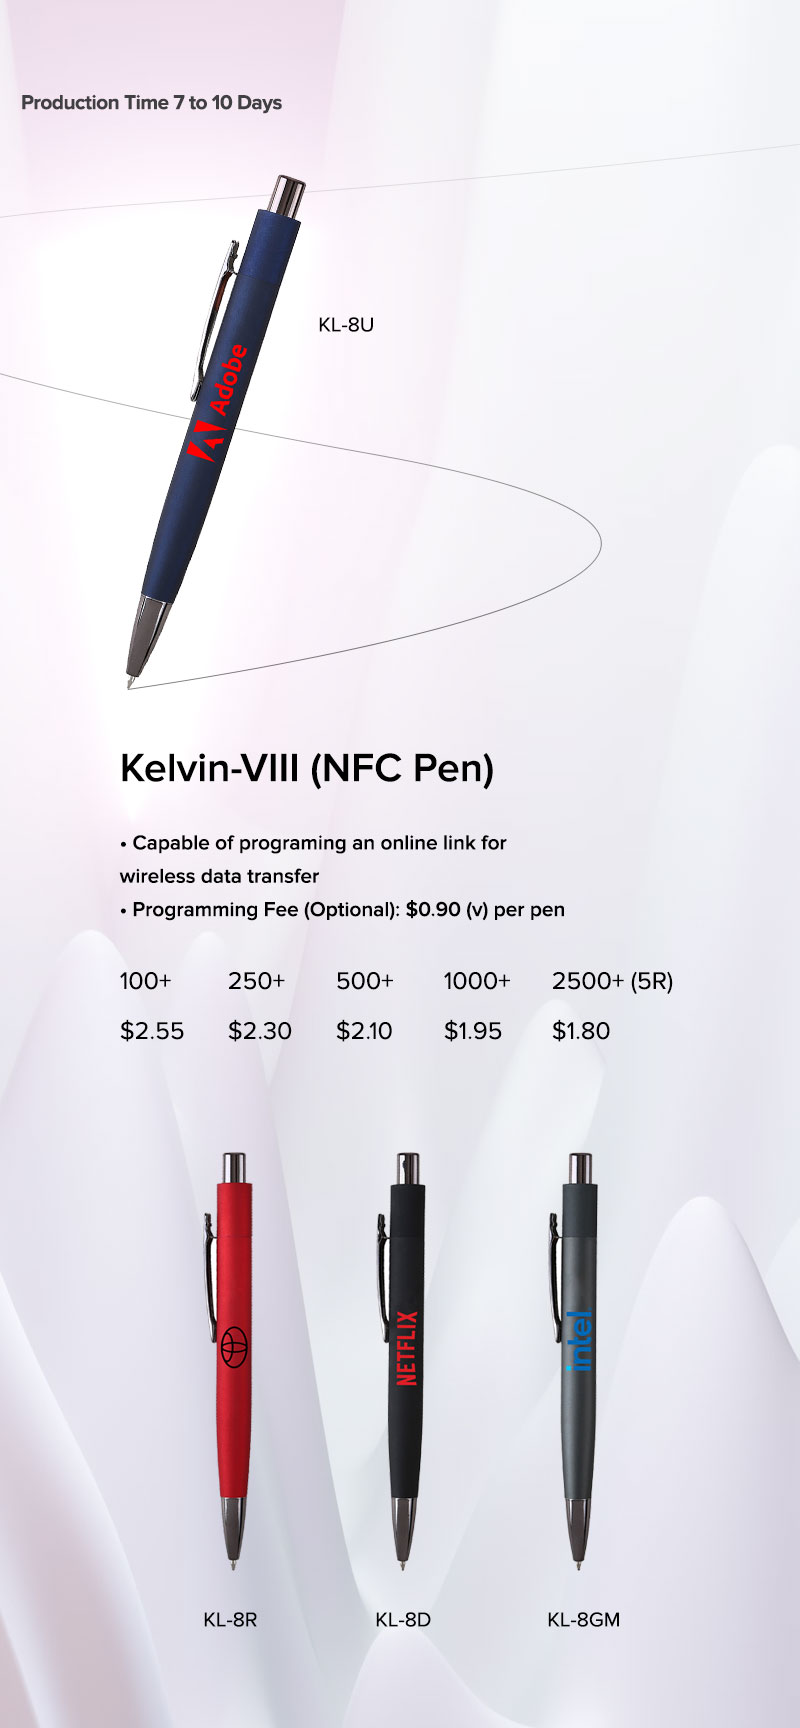 Lungsal's NFC Pen